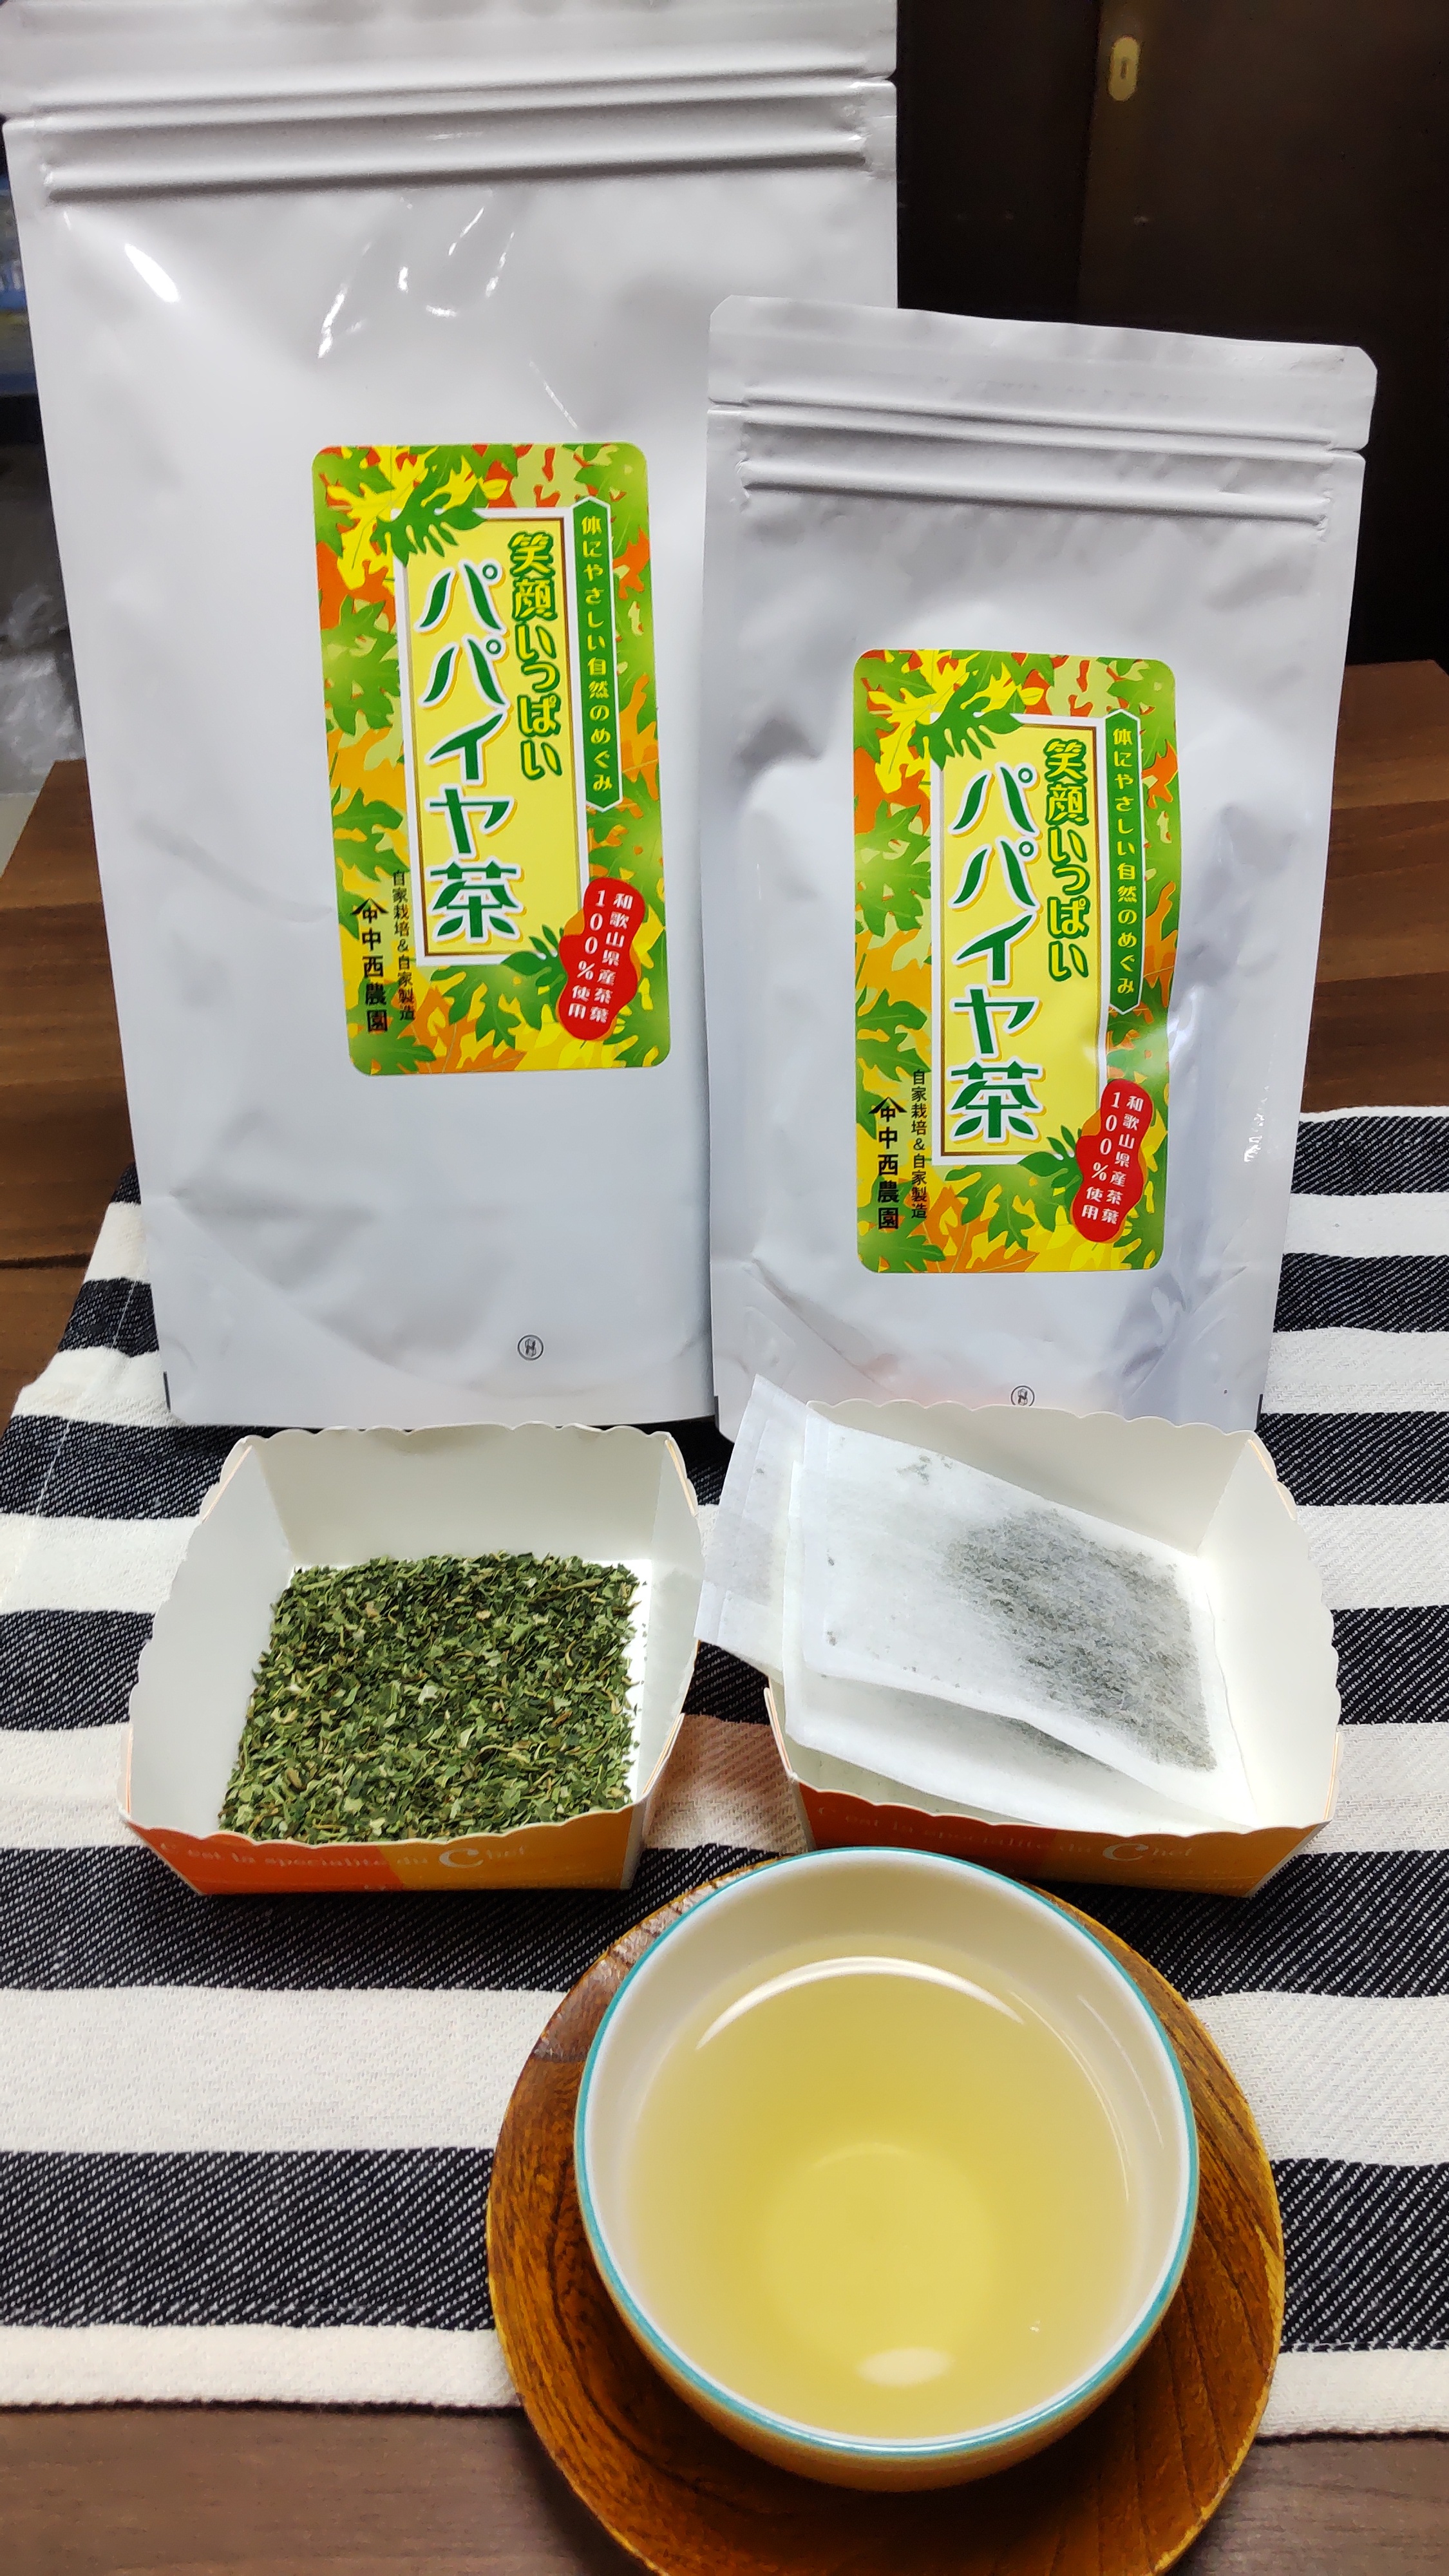 パパイヤ茶 30g(2g×15袋)